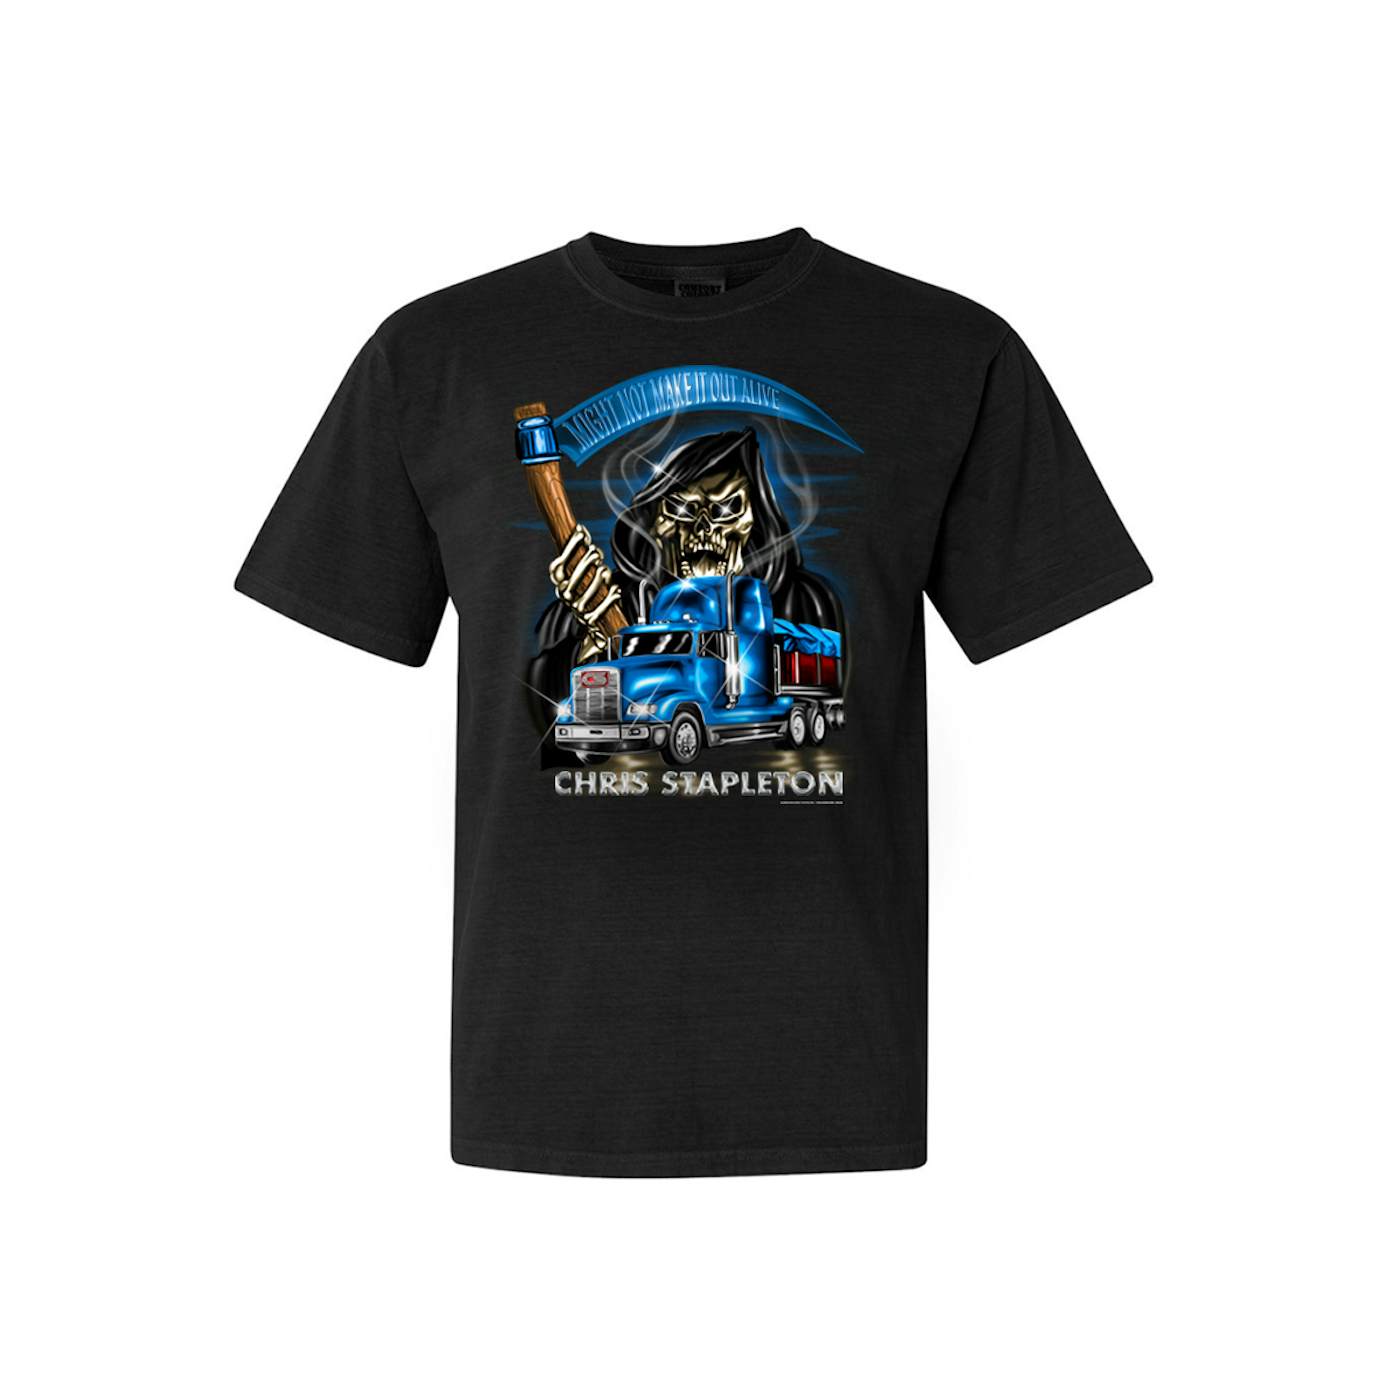 Chris Stapleton "Crosswind" Reaper T-shirt